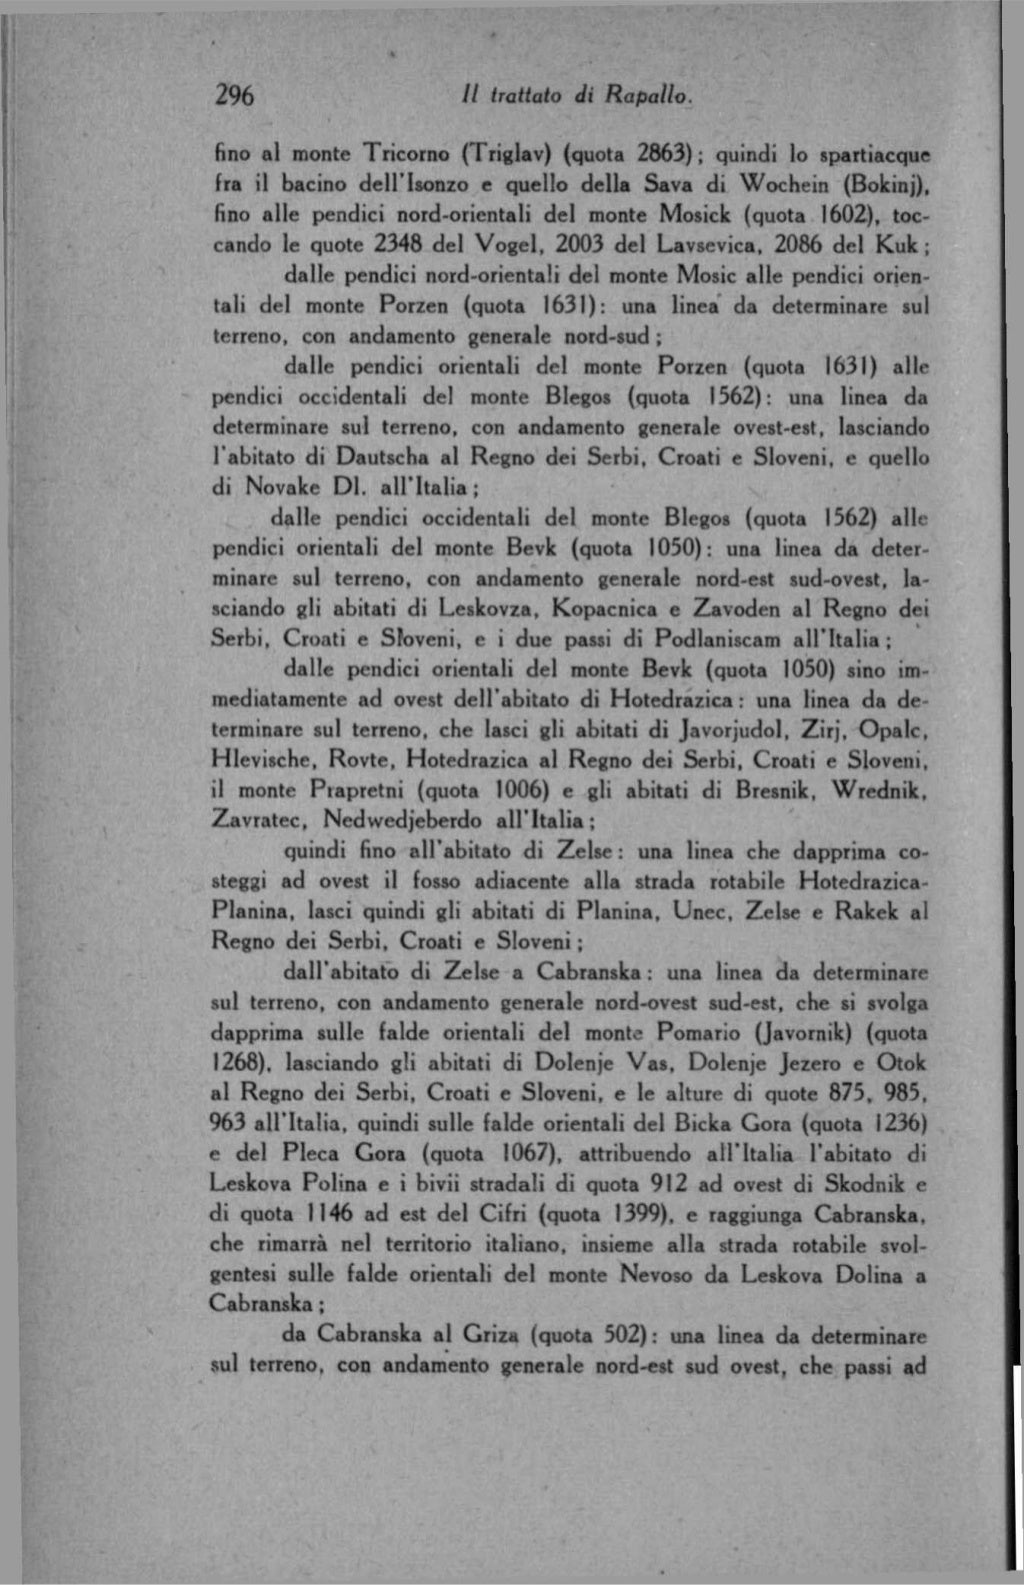 Luigi Federzoni - Il Trattato di Rapallo (1921)